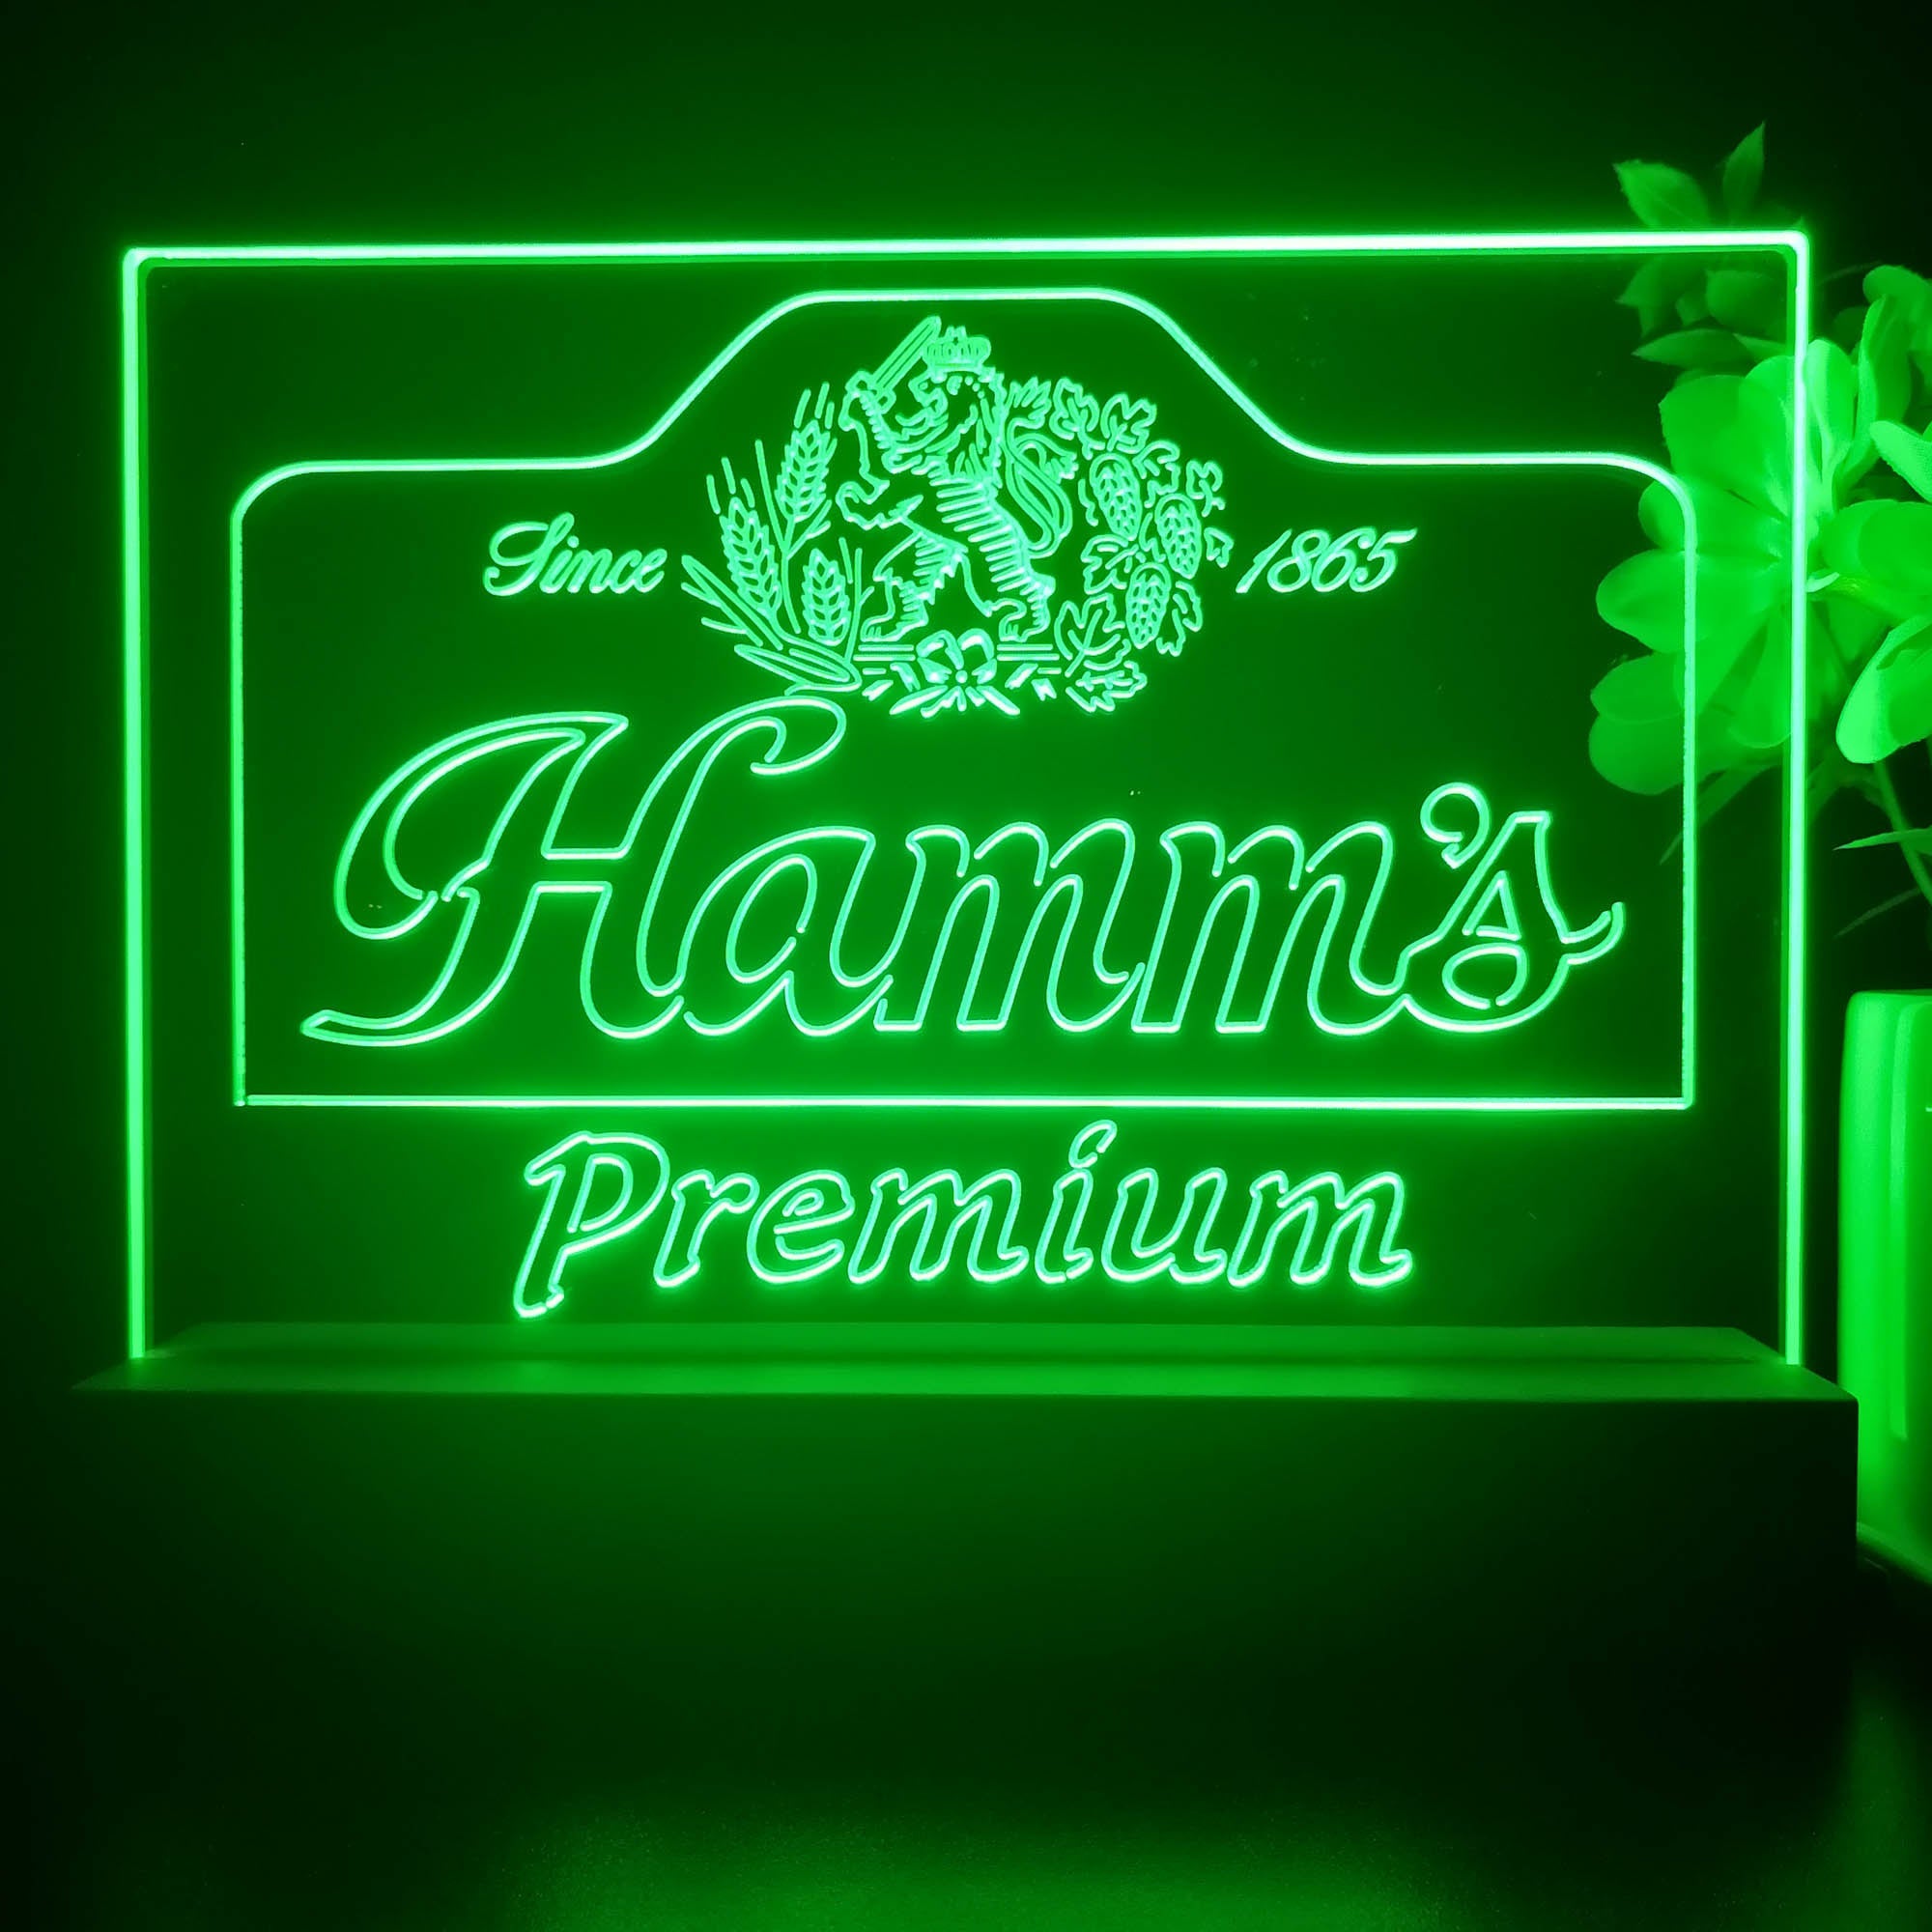 Hamm's Premium Est 1865 Neon Sign Pub Bar Decor Lamp